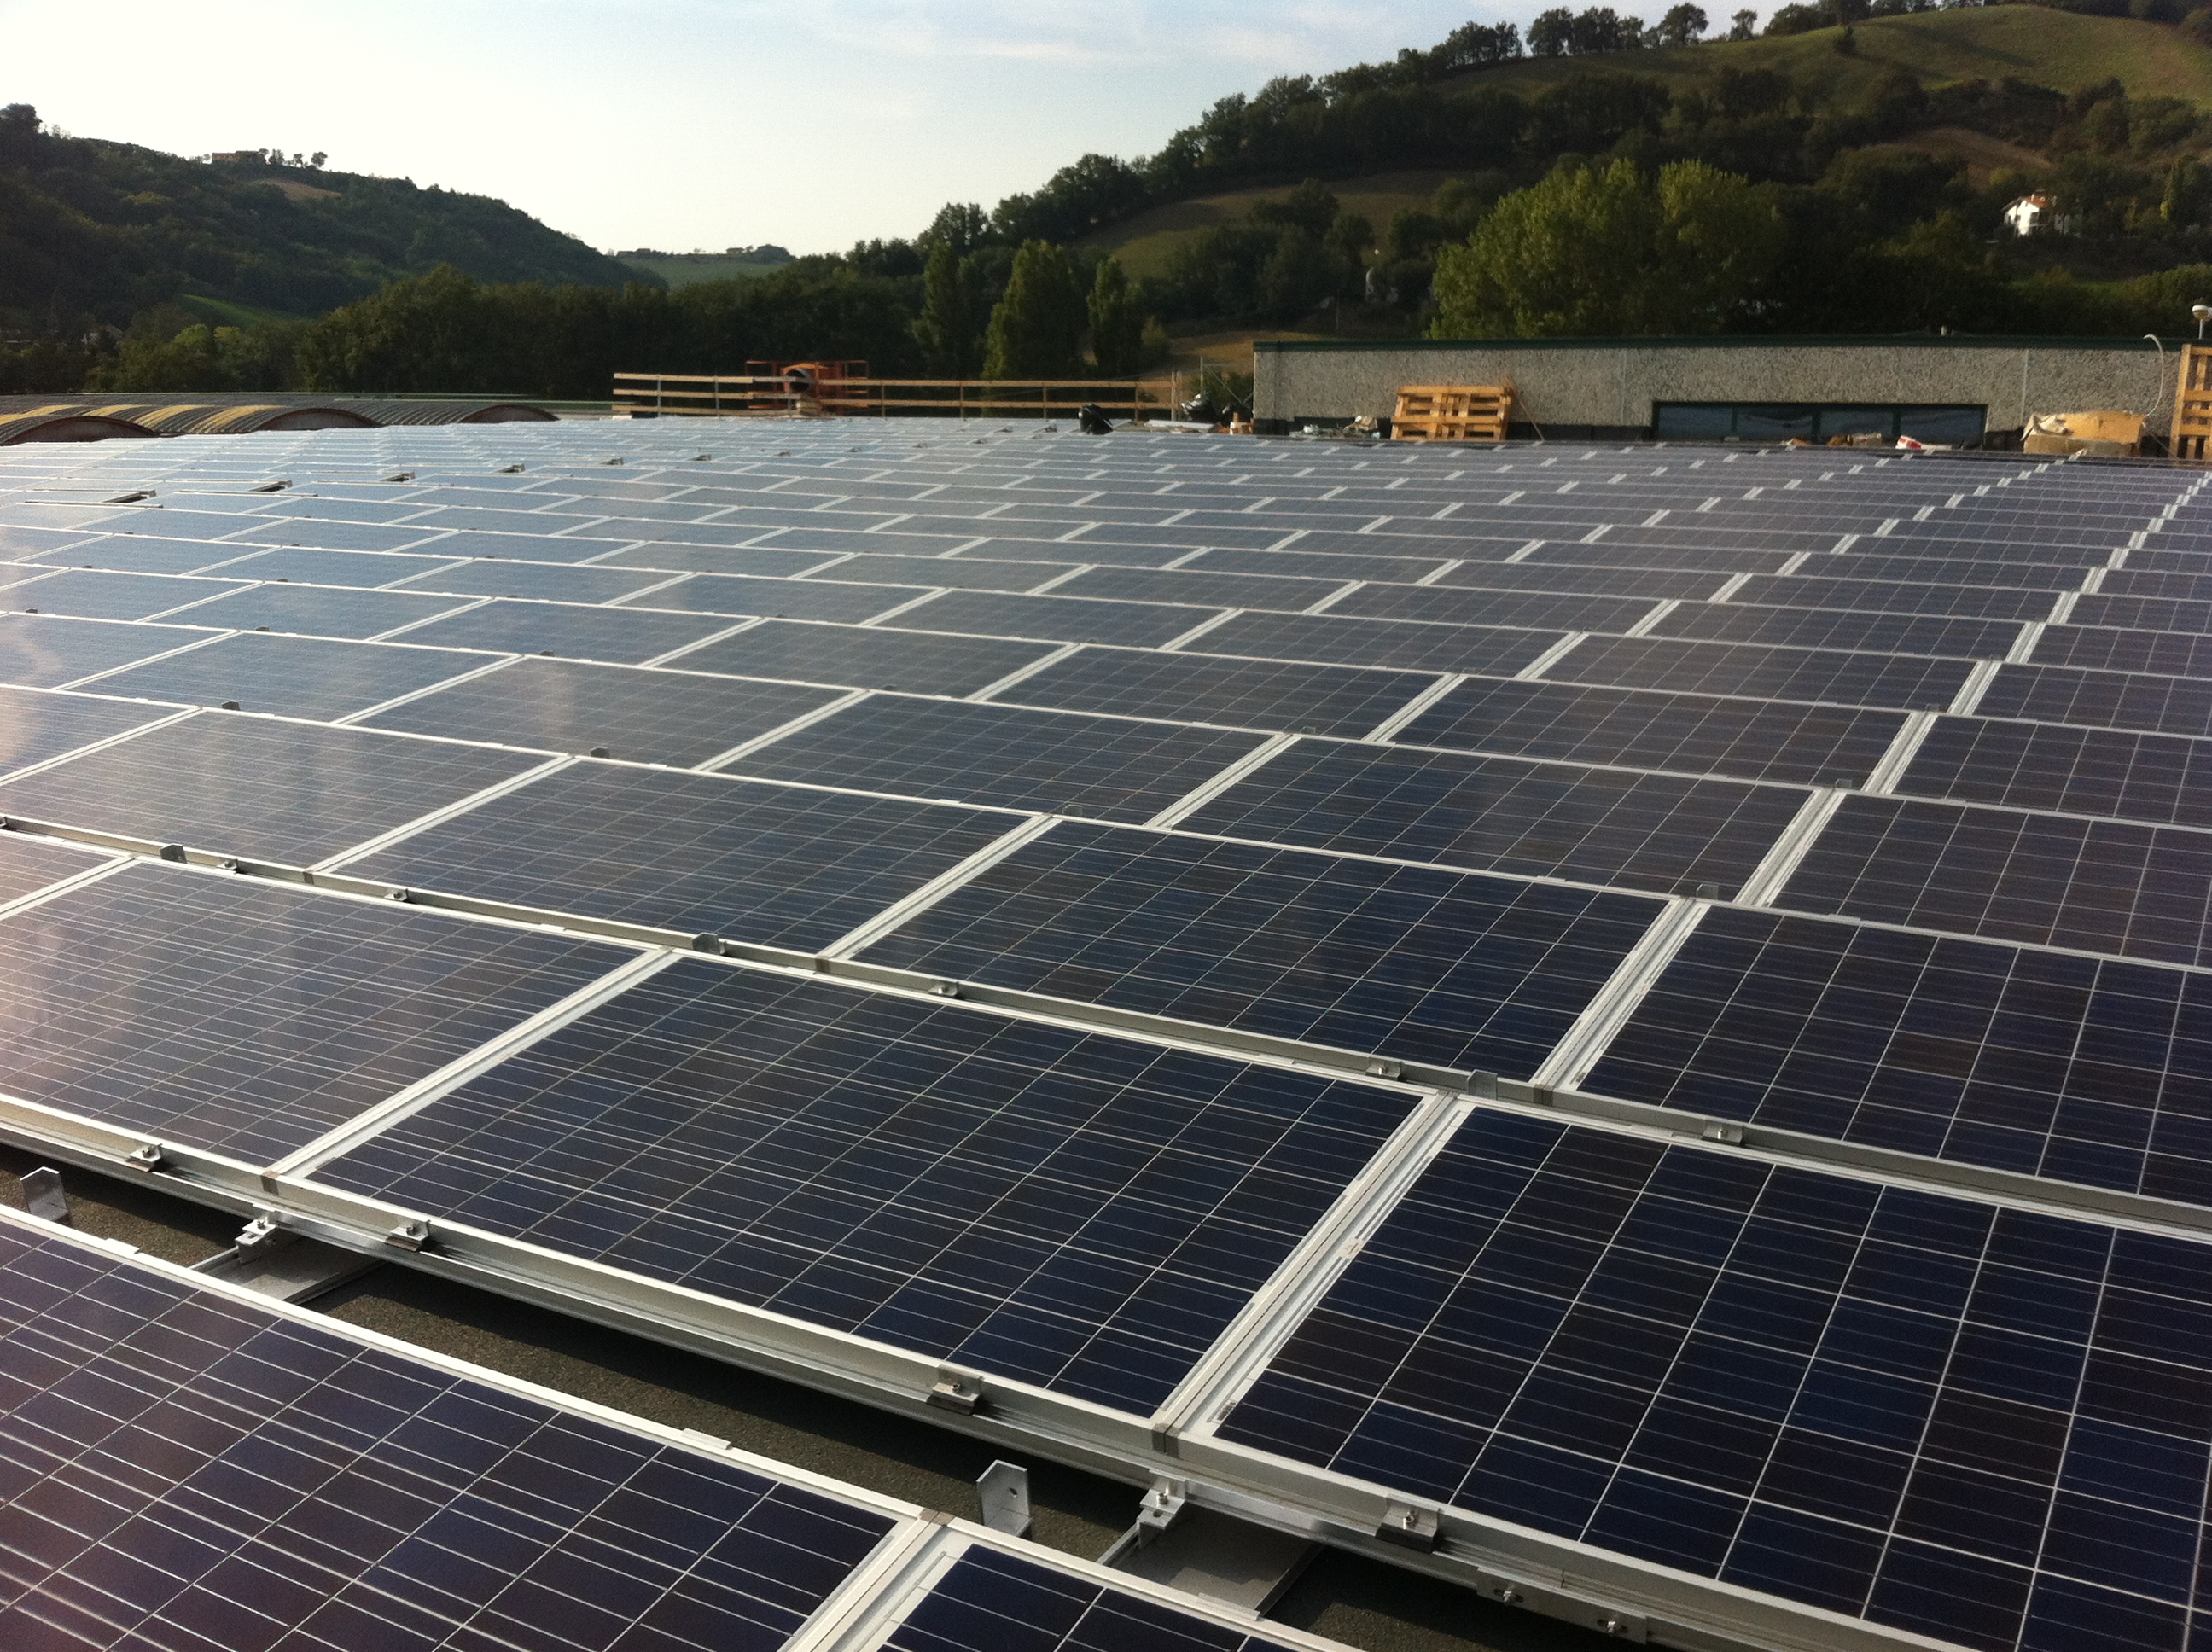 Impianto fotovoltaico potenza nominale 100 kWp realizzato da Salucci Impianti S.r.l,  a Montecalvo in Foglia